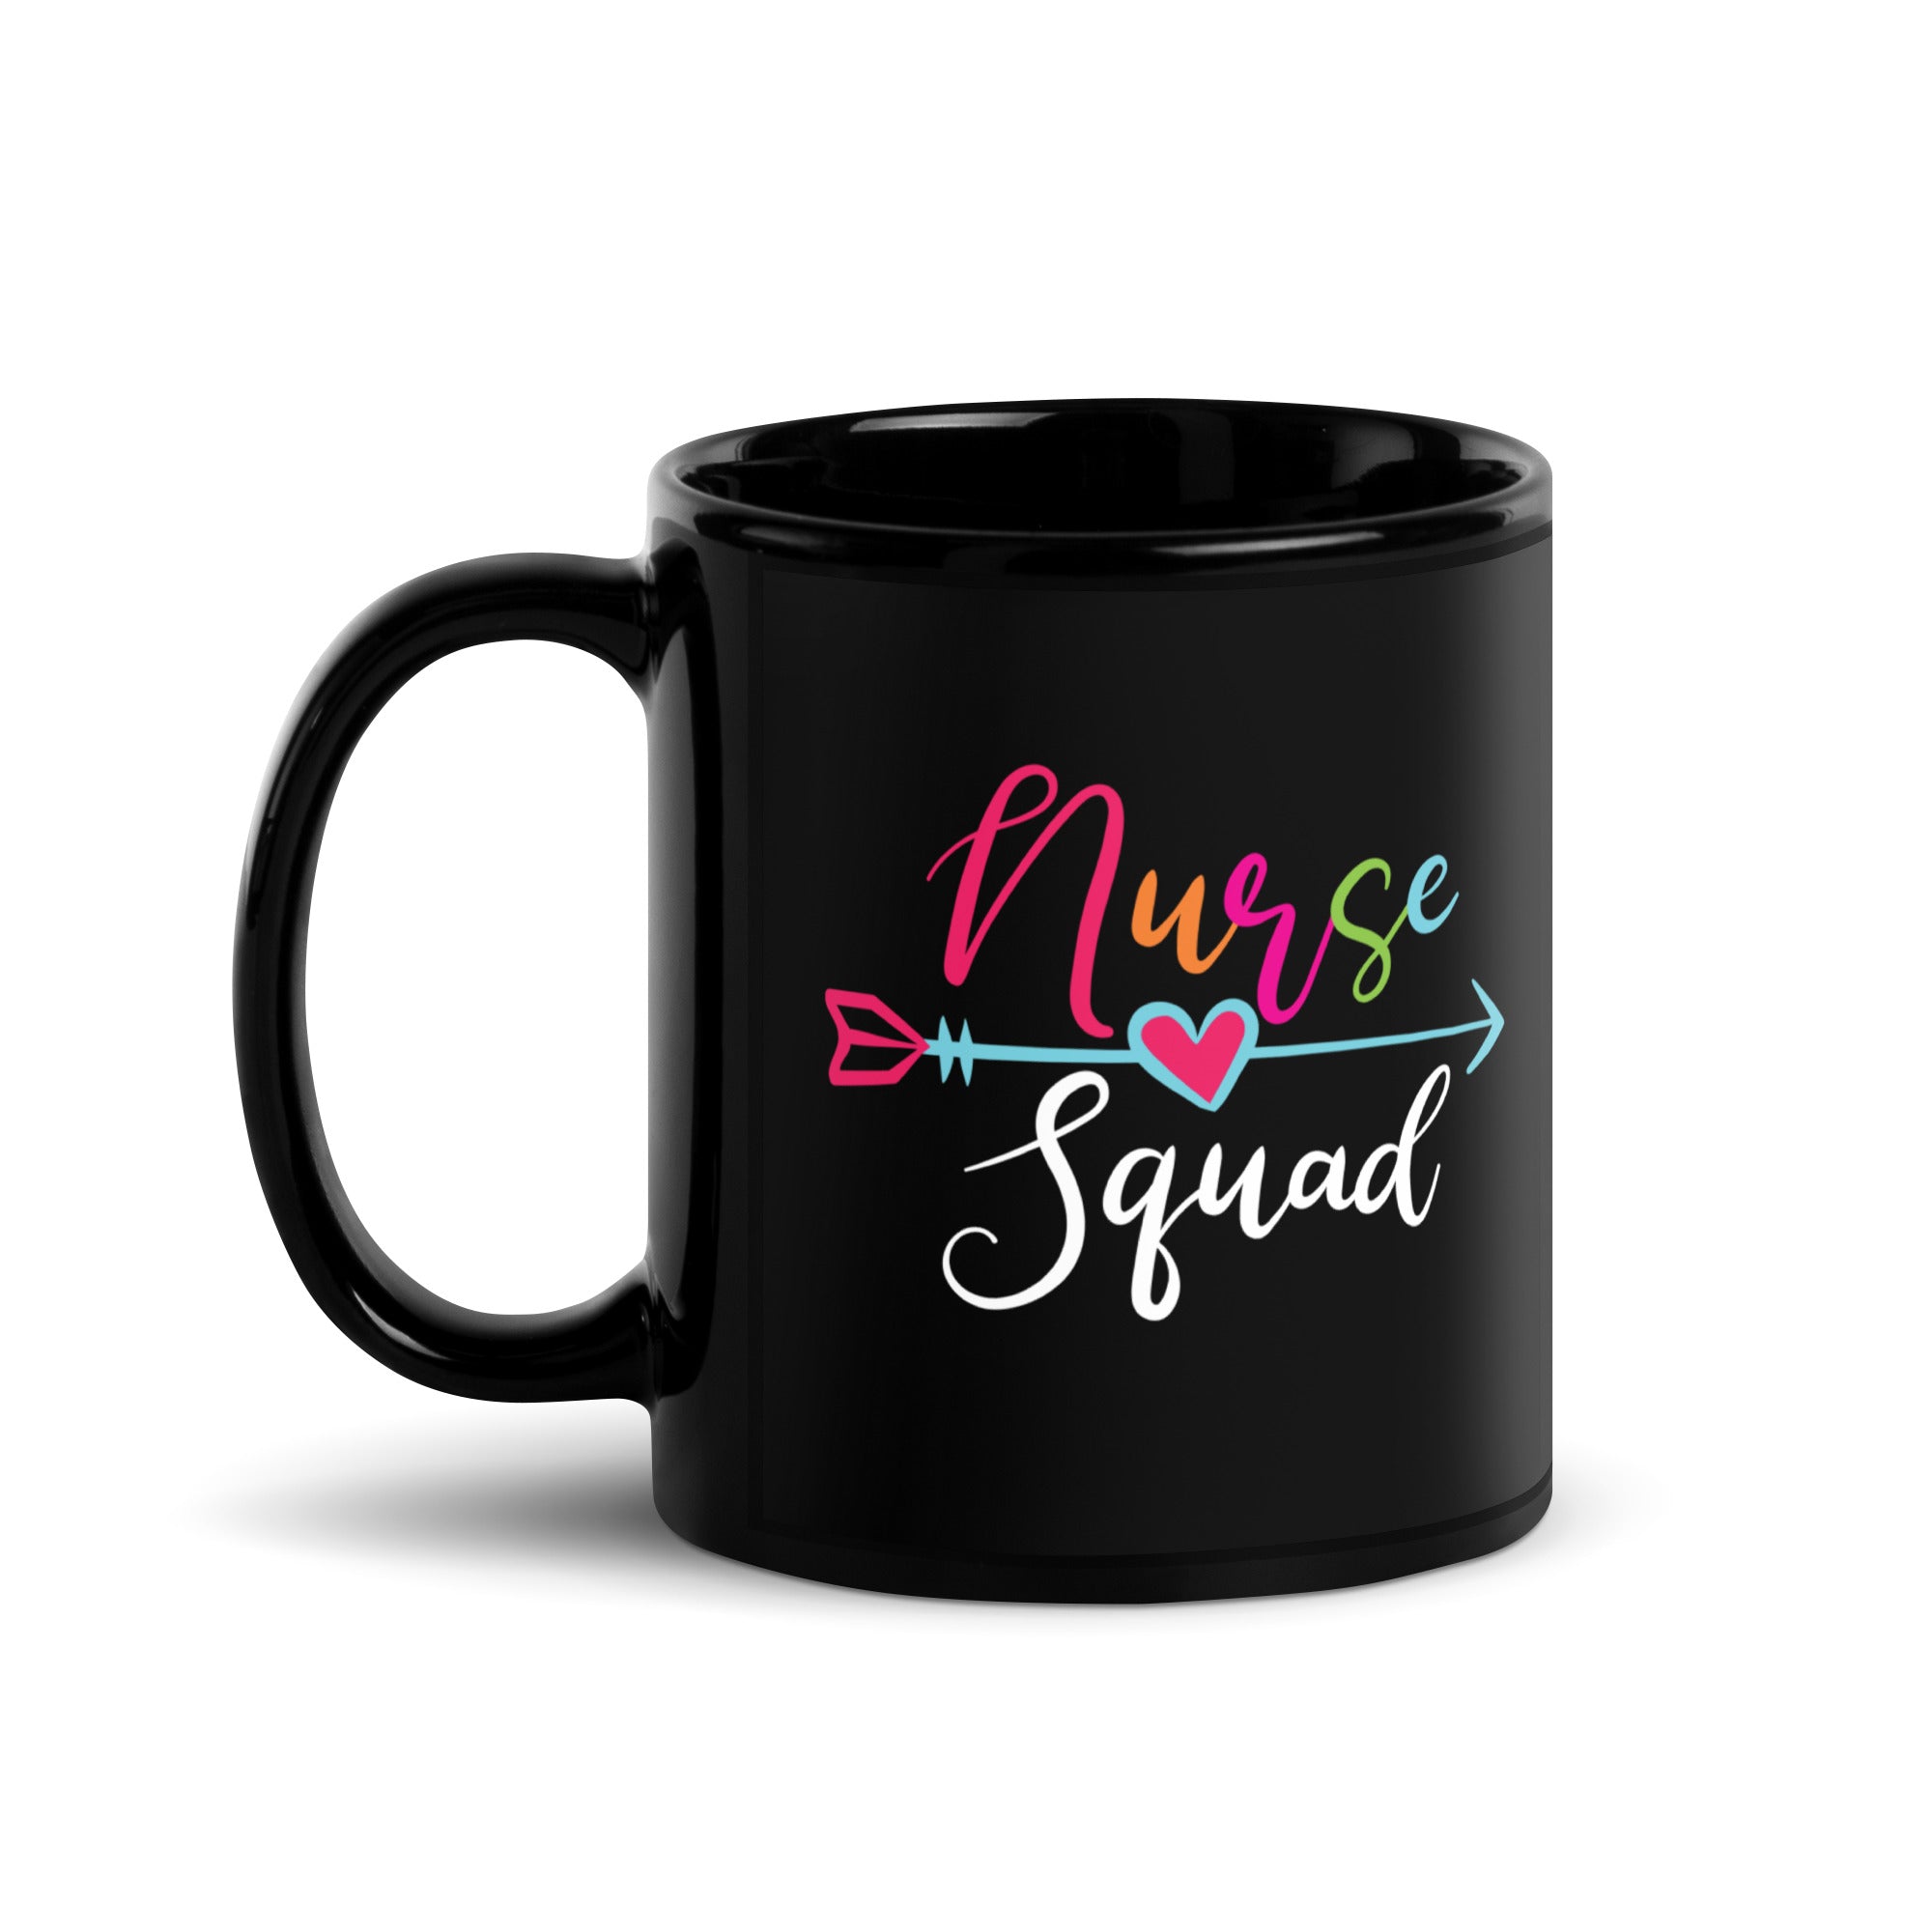 Nurse Squad Black Glossy Mug